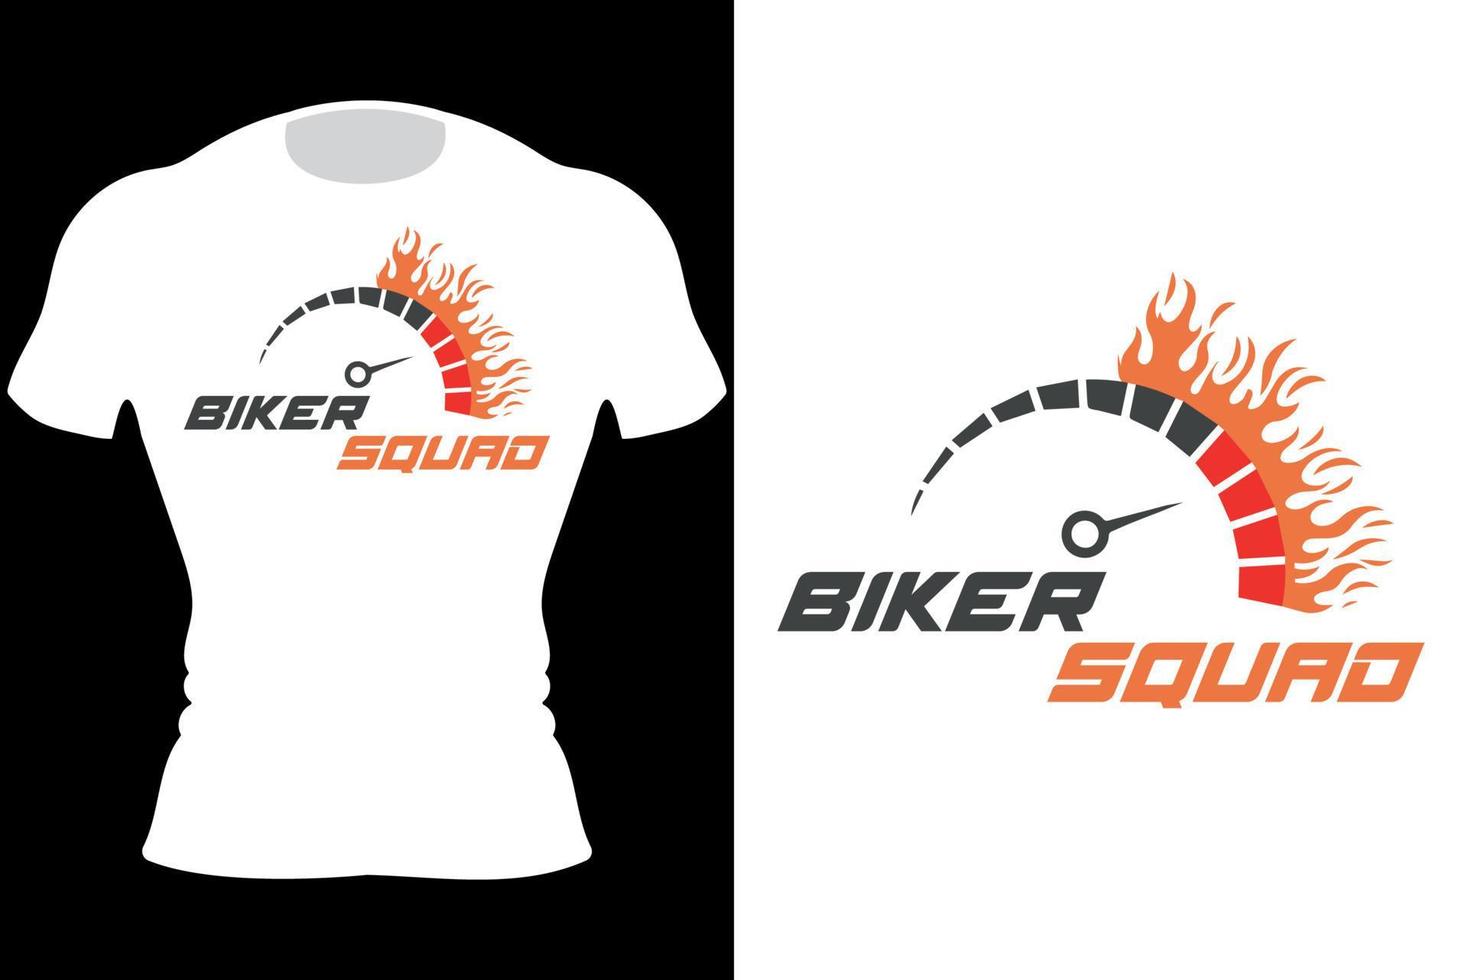 aangepaste motoren.crazy biker.crazy squad biker.ride to live live to ride.motorcycle t-shirt design vector